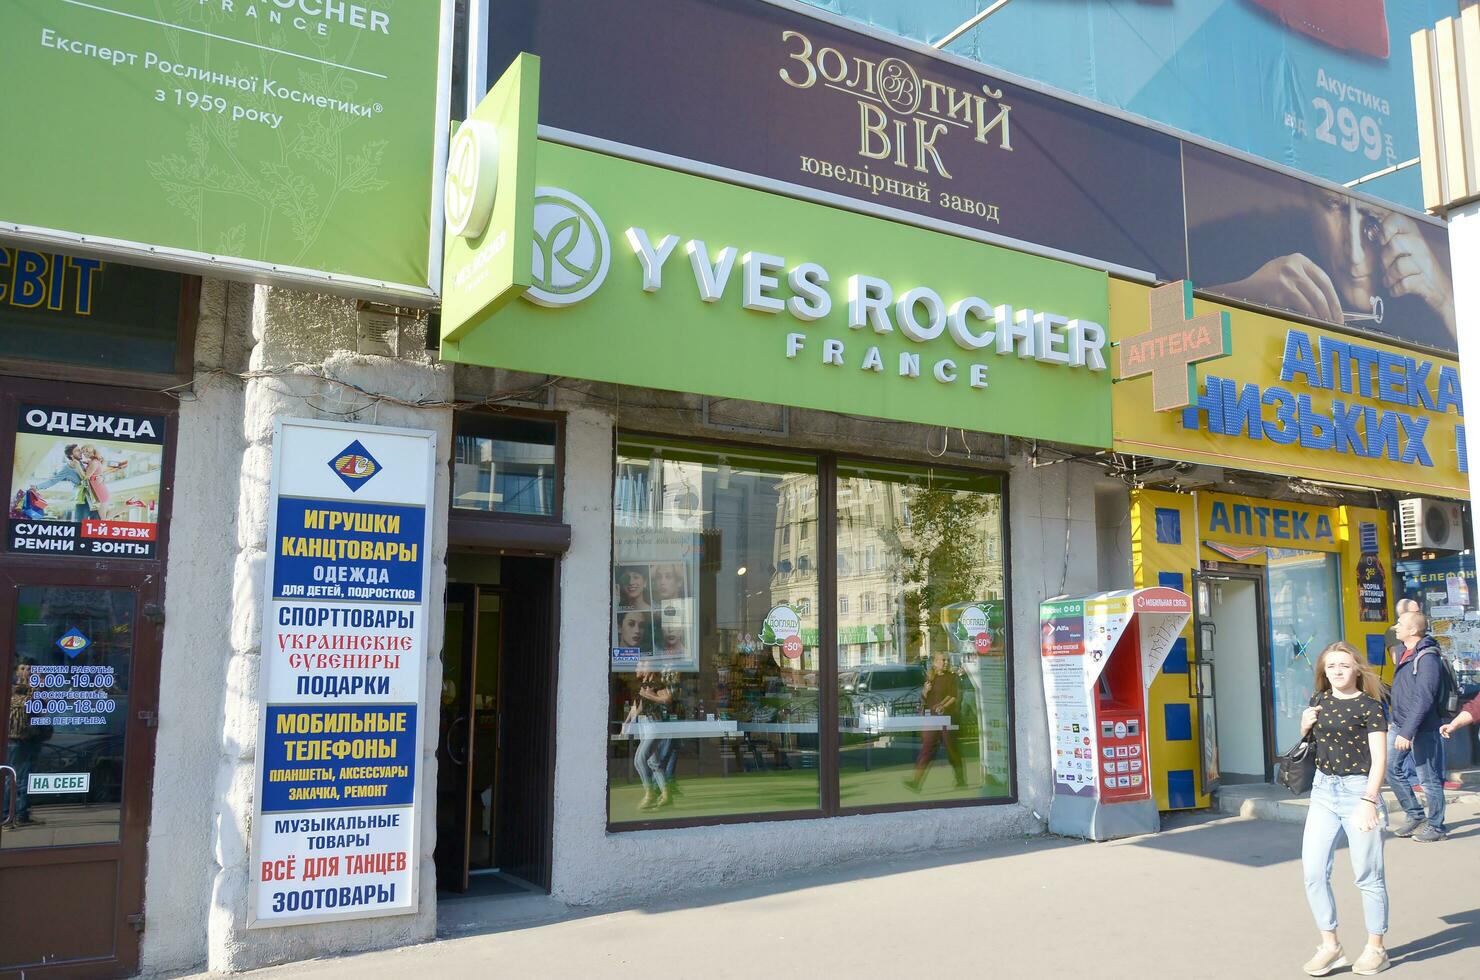 Charkow, Ukraine - - Oktober 20, 2019 yves Rocher Boutique im Charkiw. yves Rocher ist Welt berühmt Kosmetika und Schönheit Marke foto